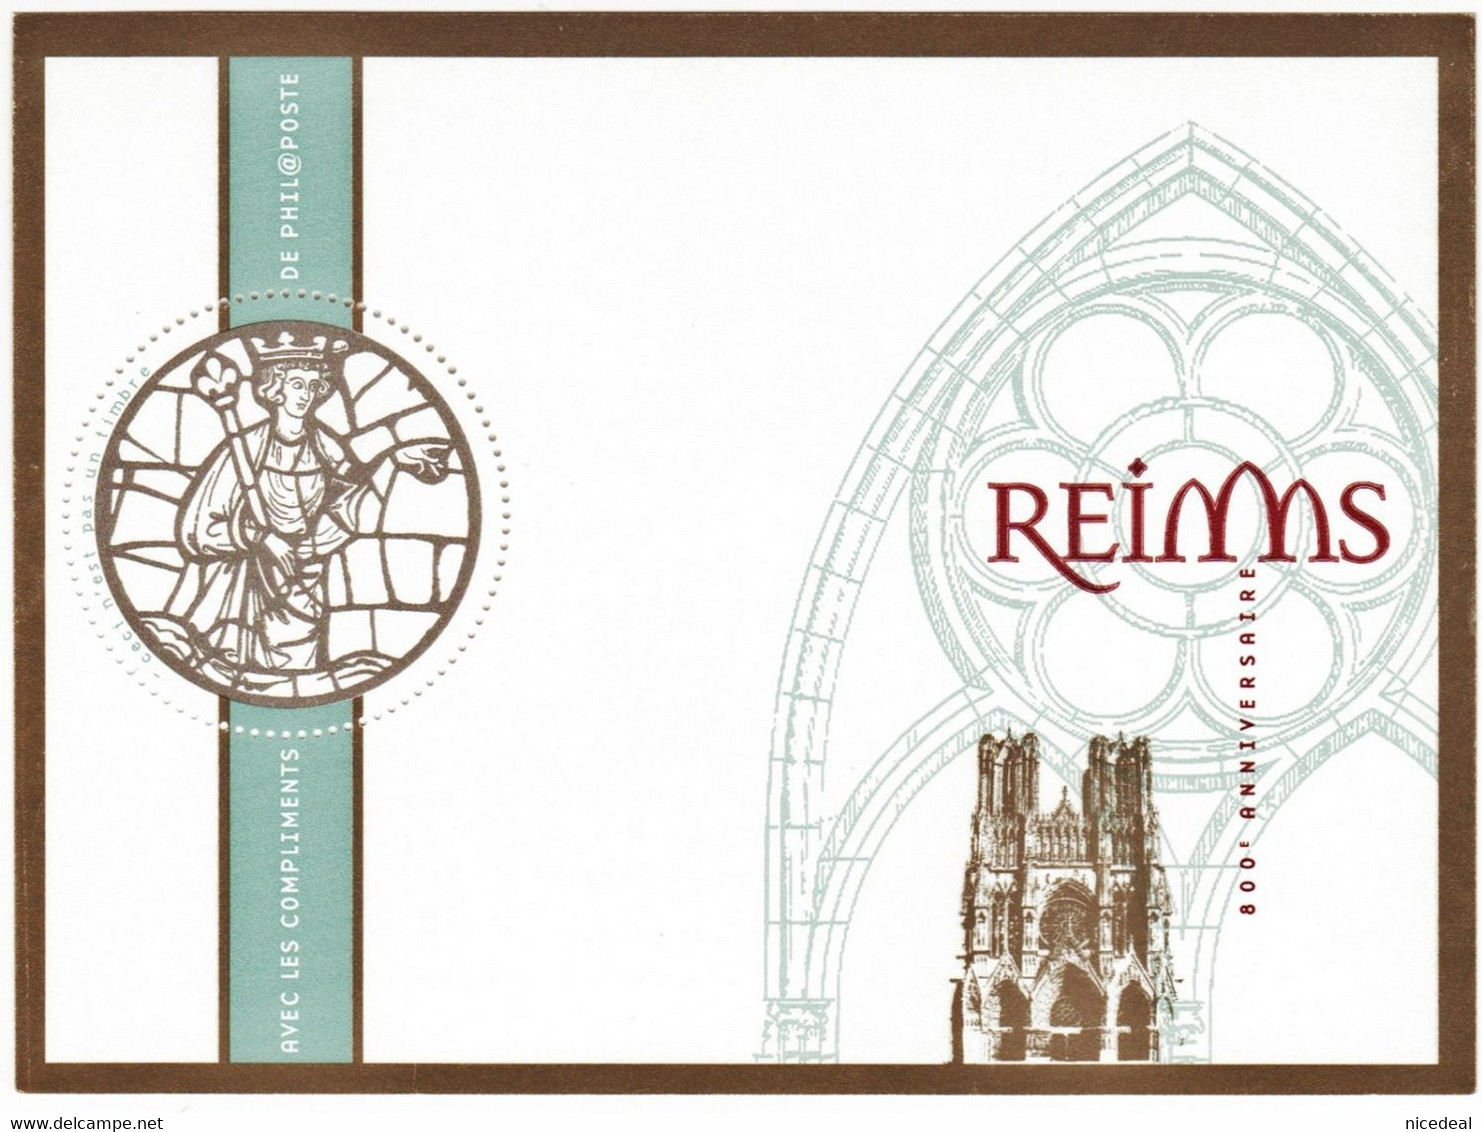 2 Blocs Feuillets 800e Anniversaire Cathédrale Reims + Enveloppe Phil@poste Bonne Année 2012 + Calendrier Philatélique - Blocs Souvenir